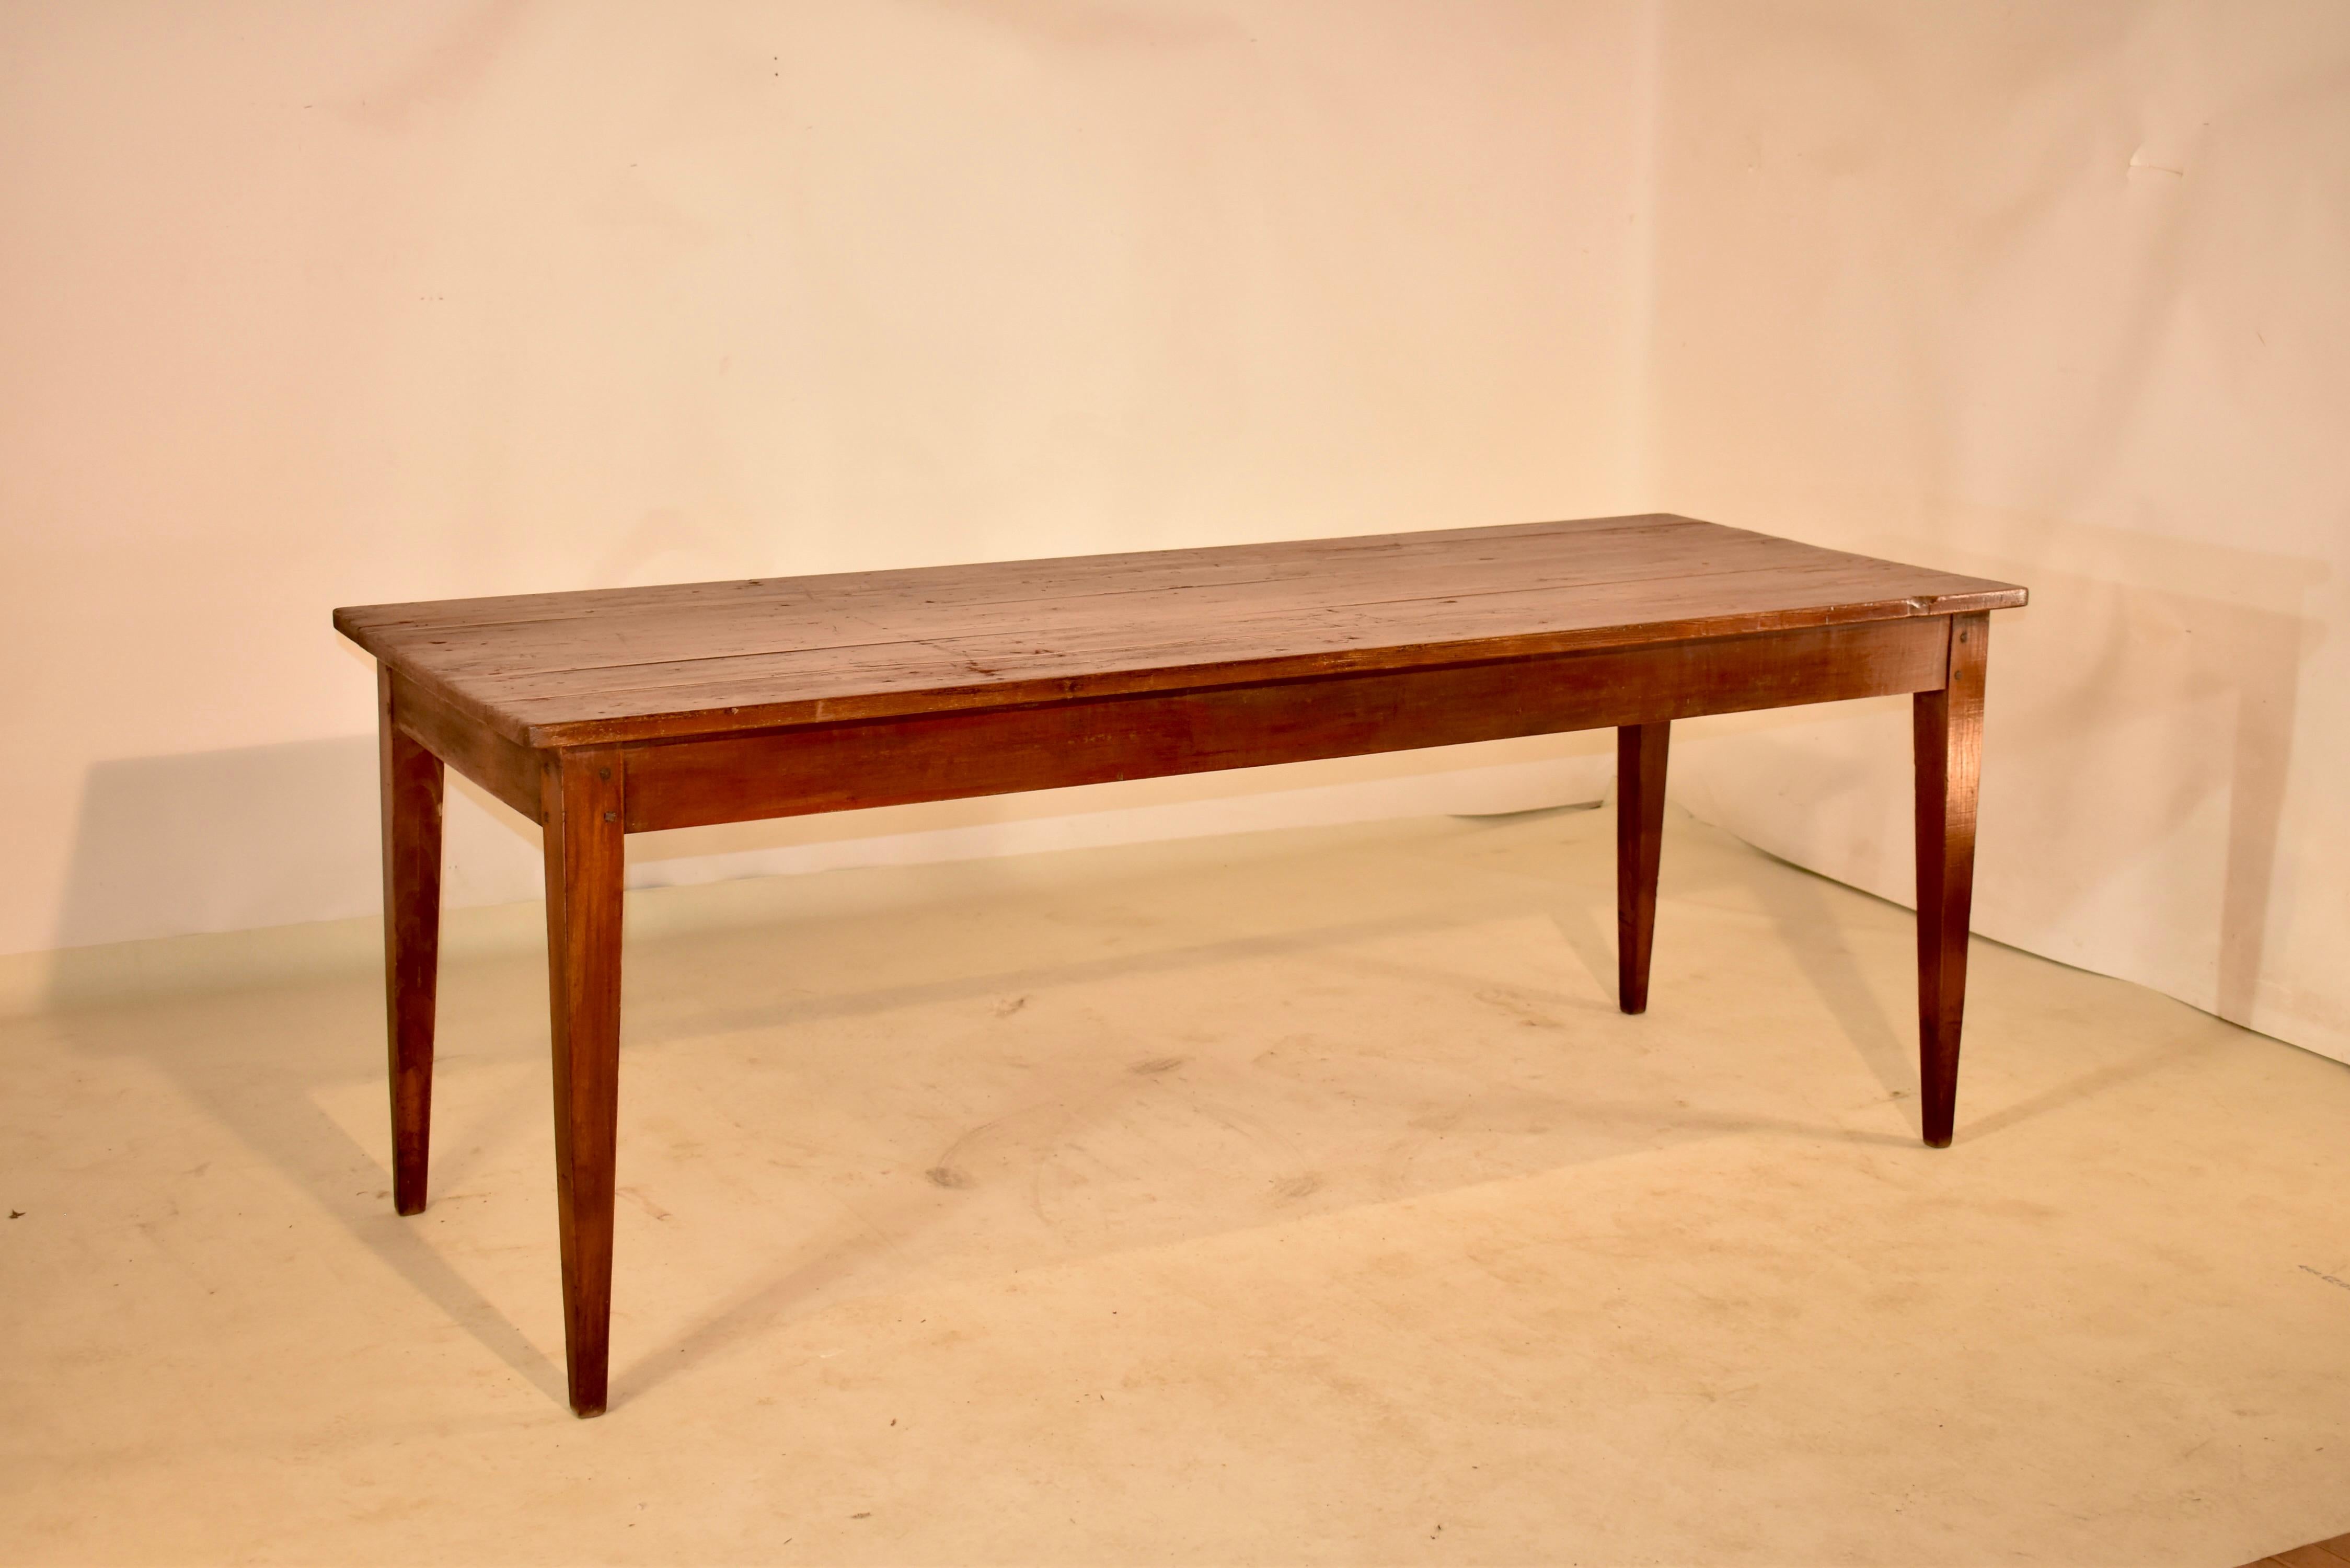 Bauernhoftisch aus dem frühen 19. Jahrhundert aus Frankreich, hergestellt aus Kiefer und Ulme. Die Platte ist aus Kiefernholzbrettern gefertigt und wird von einem Ulmensockel getragen, der eine schlichte Schürze hat, die 25 Zoll hoch ist und bis zu